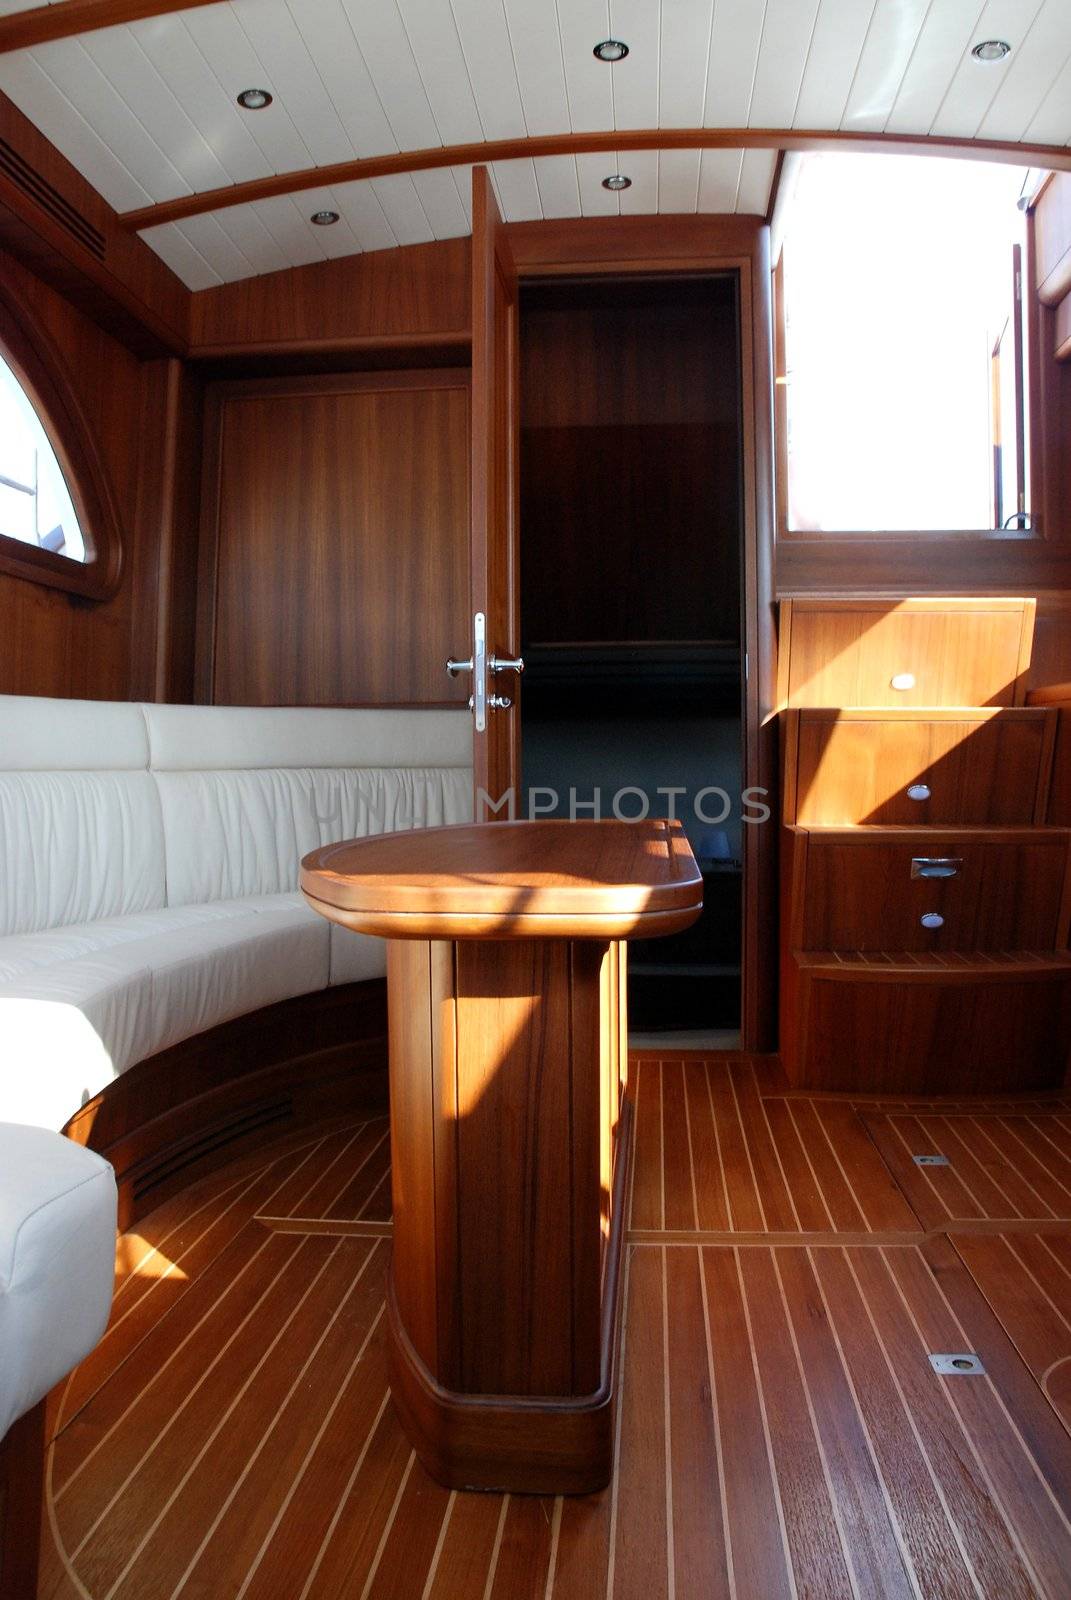  Sail baot interior by candan